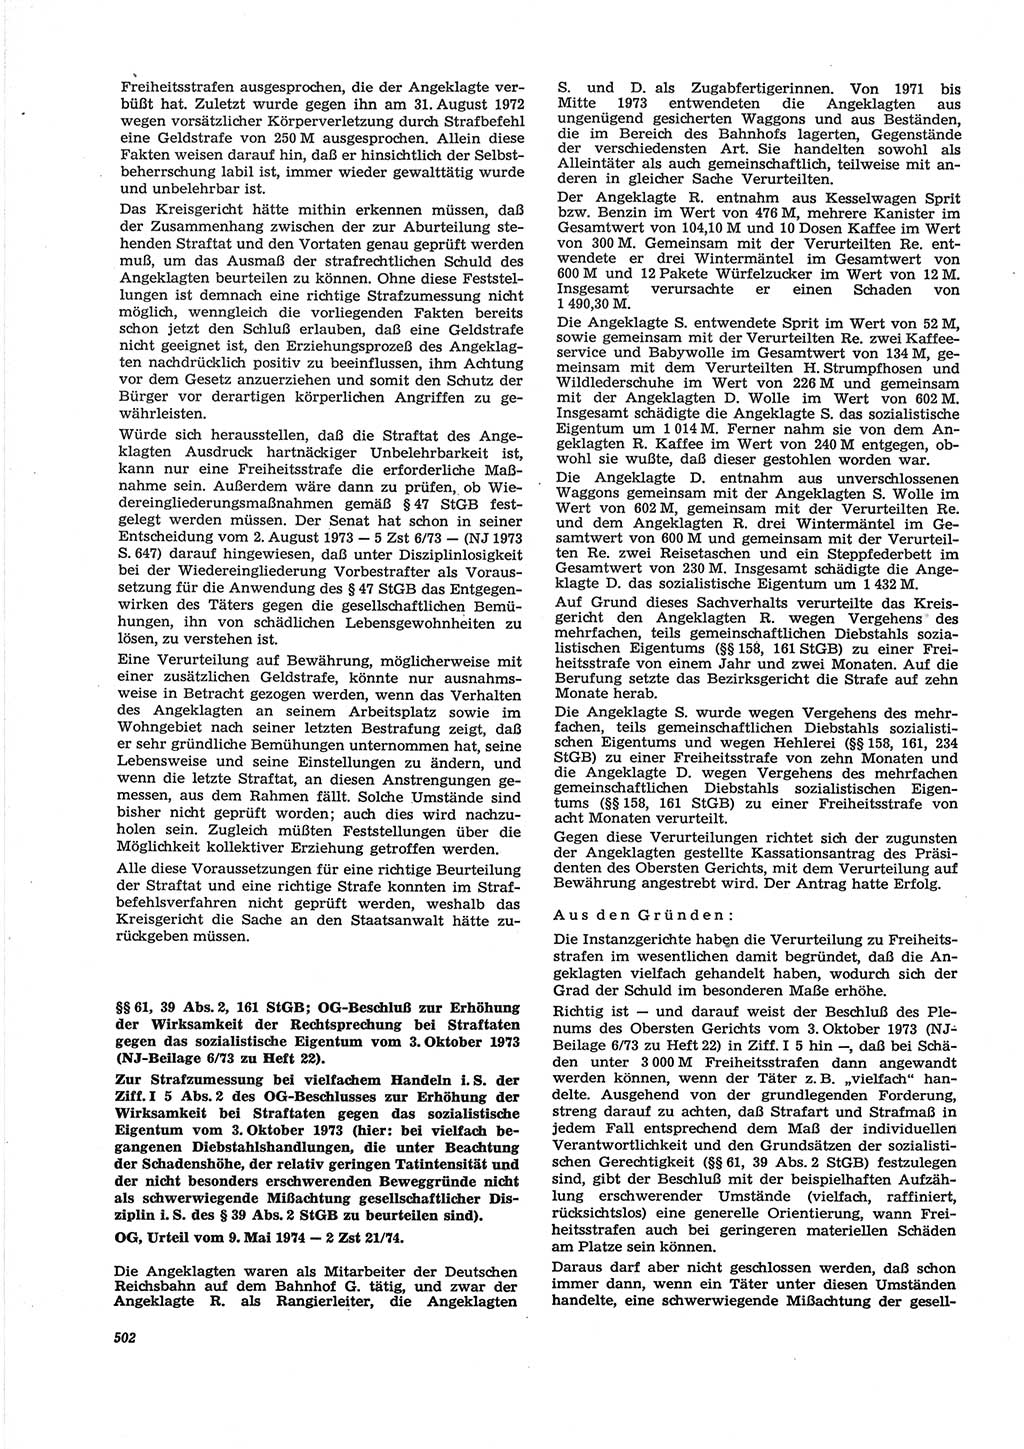 Neue Justiz (NJ), Zeitschrift für Recht und Rechtswissenschaft [Deutsche Demokratische Republik (DDR)], 28. Jahrgang 1974, Seite 502 (NJ DDR 1974, S. 502)